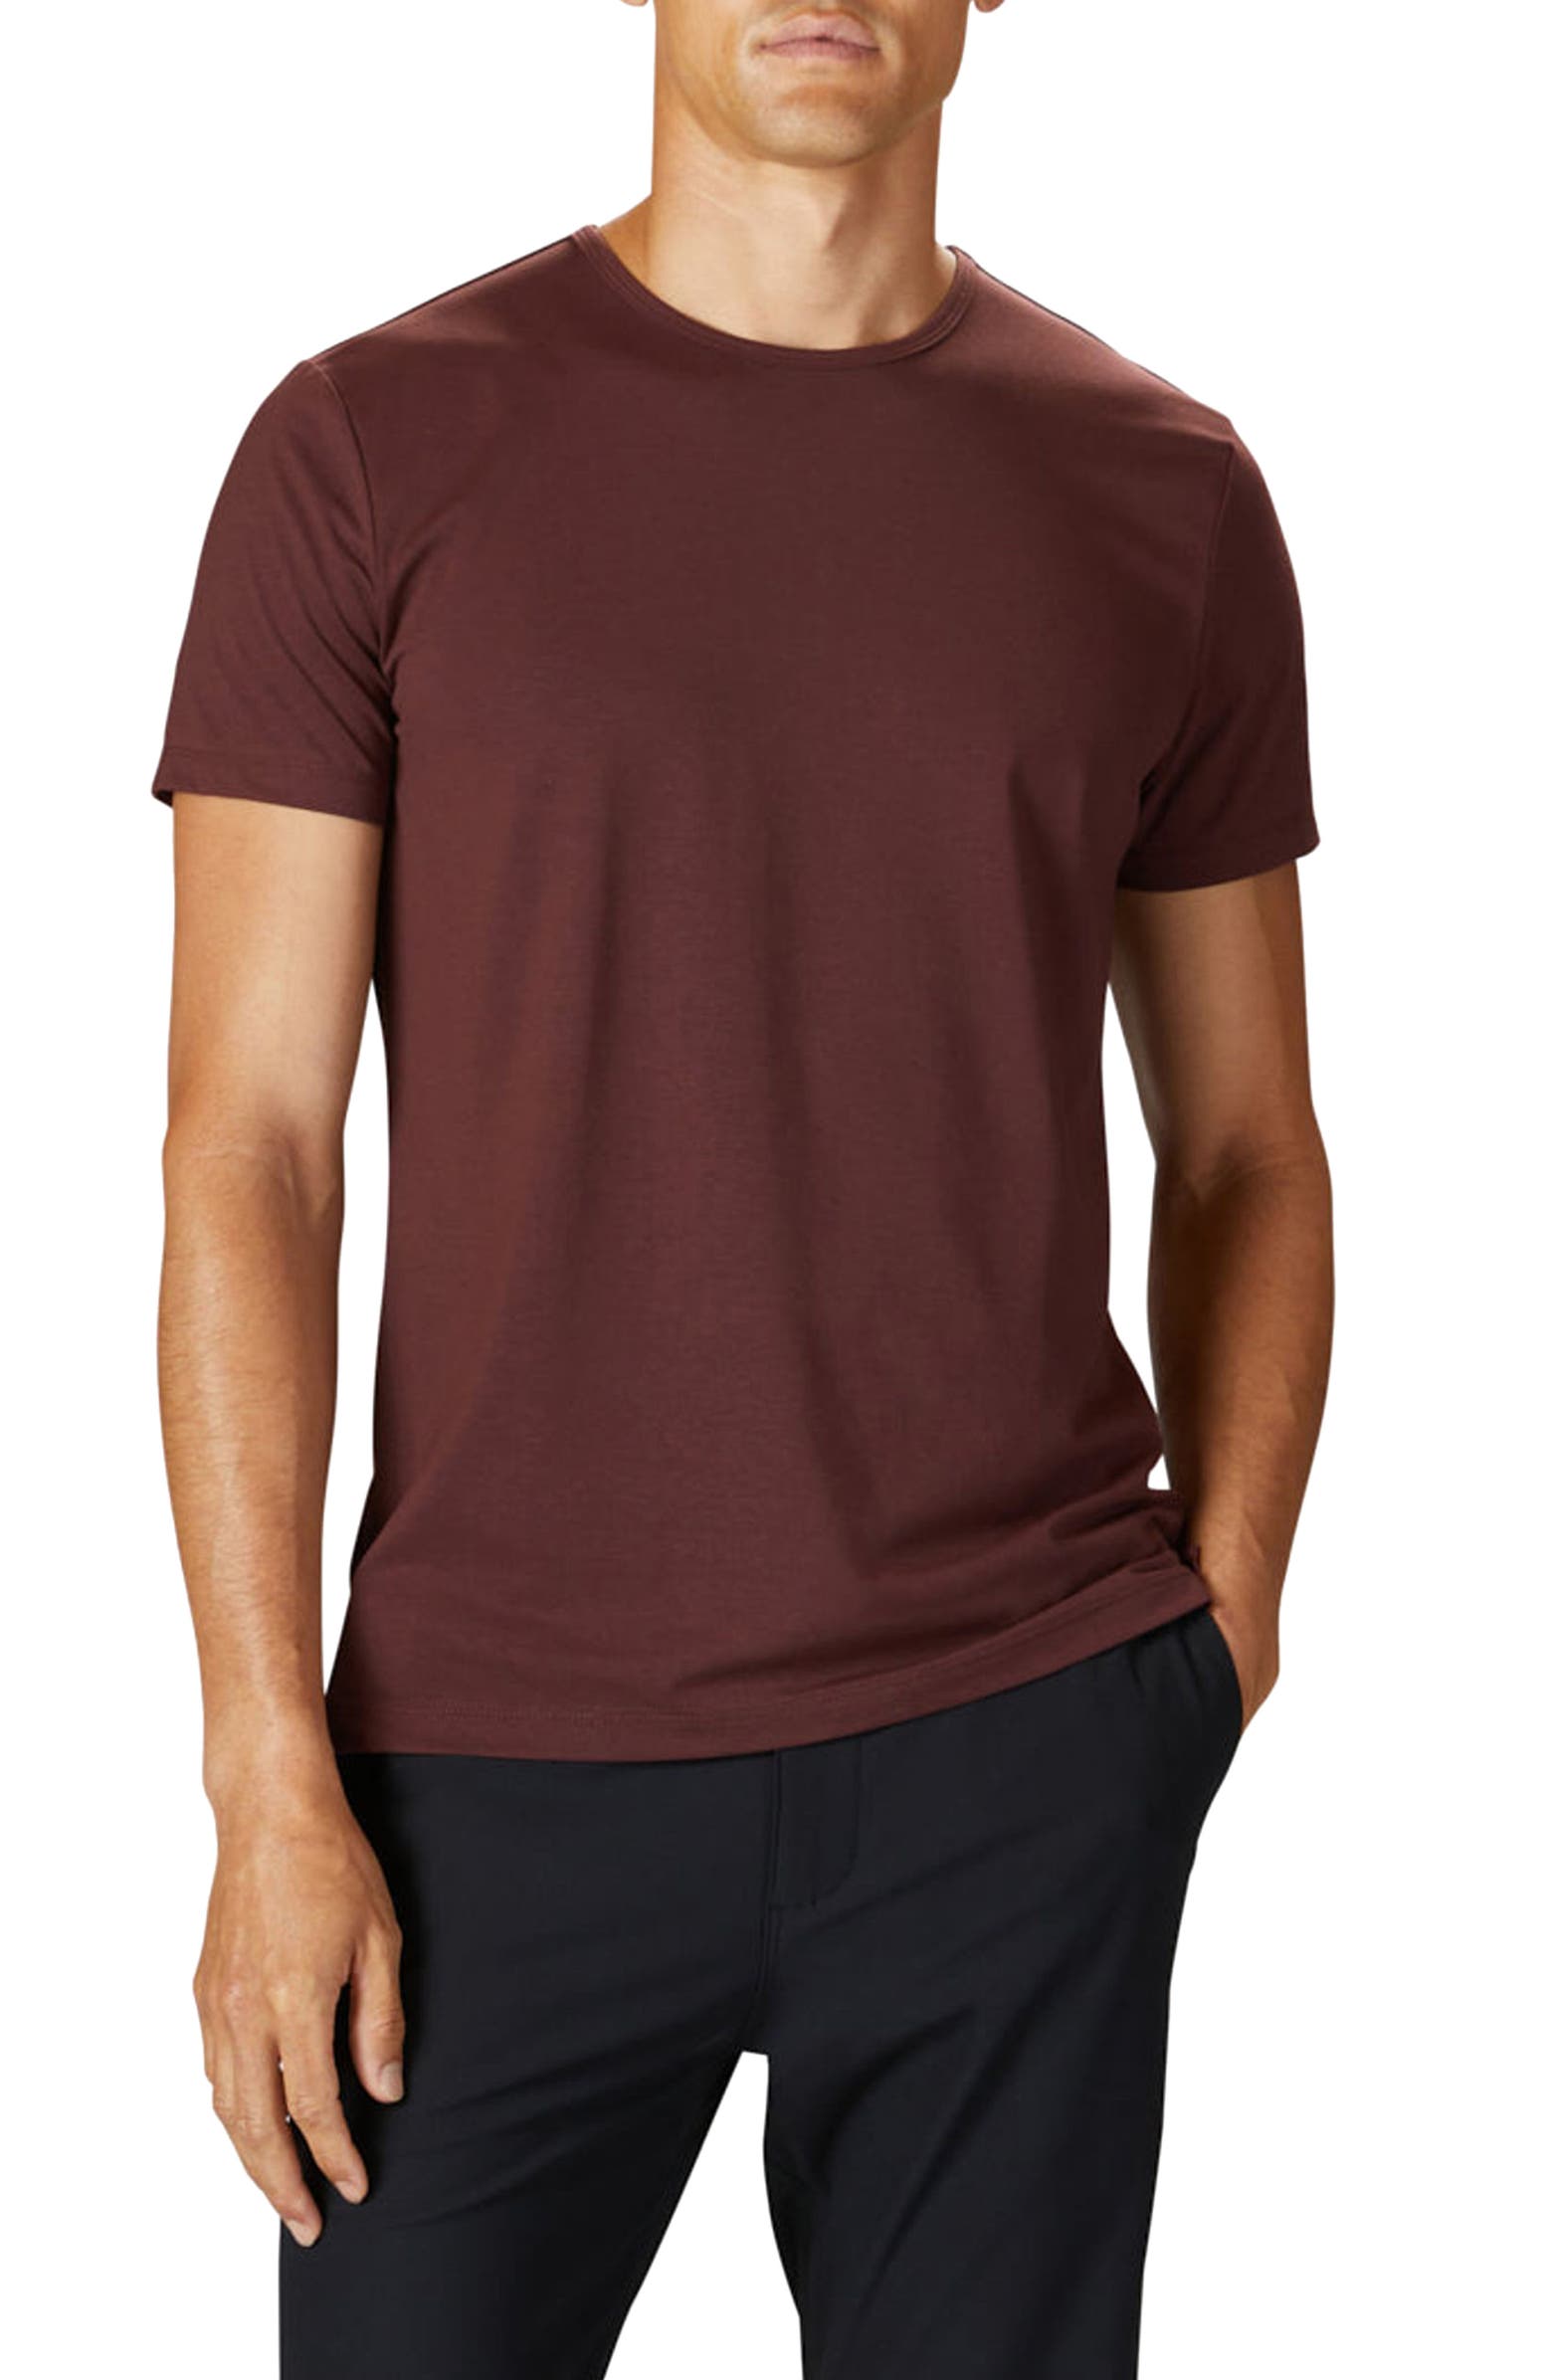 most flattering t-shirt color for men